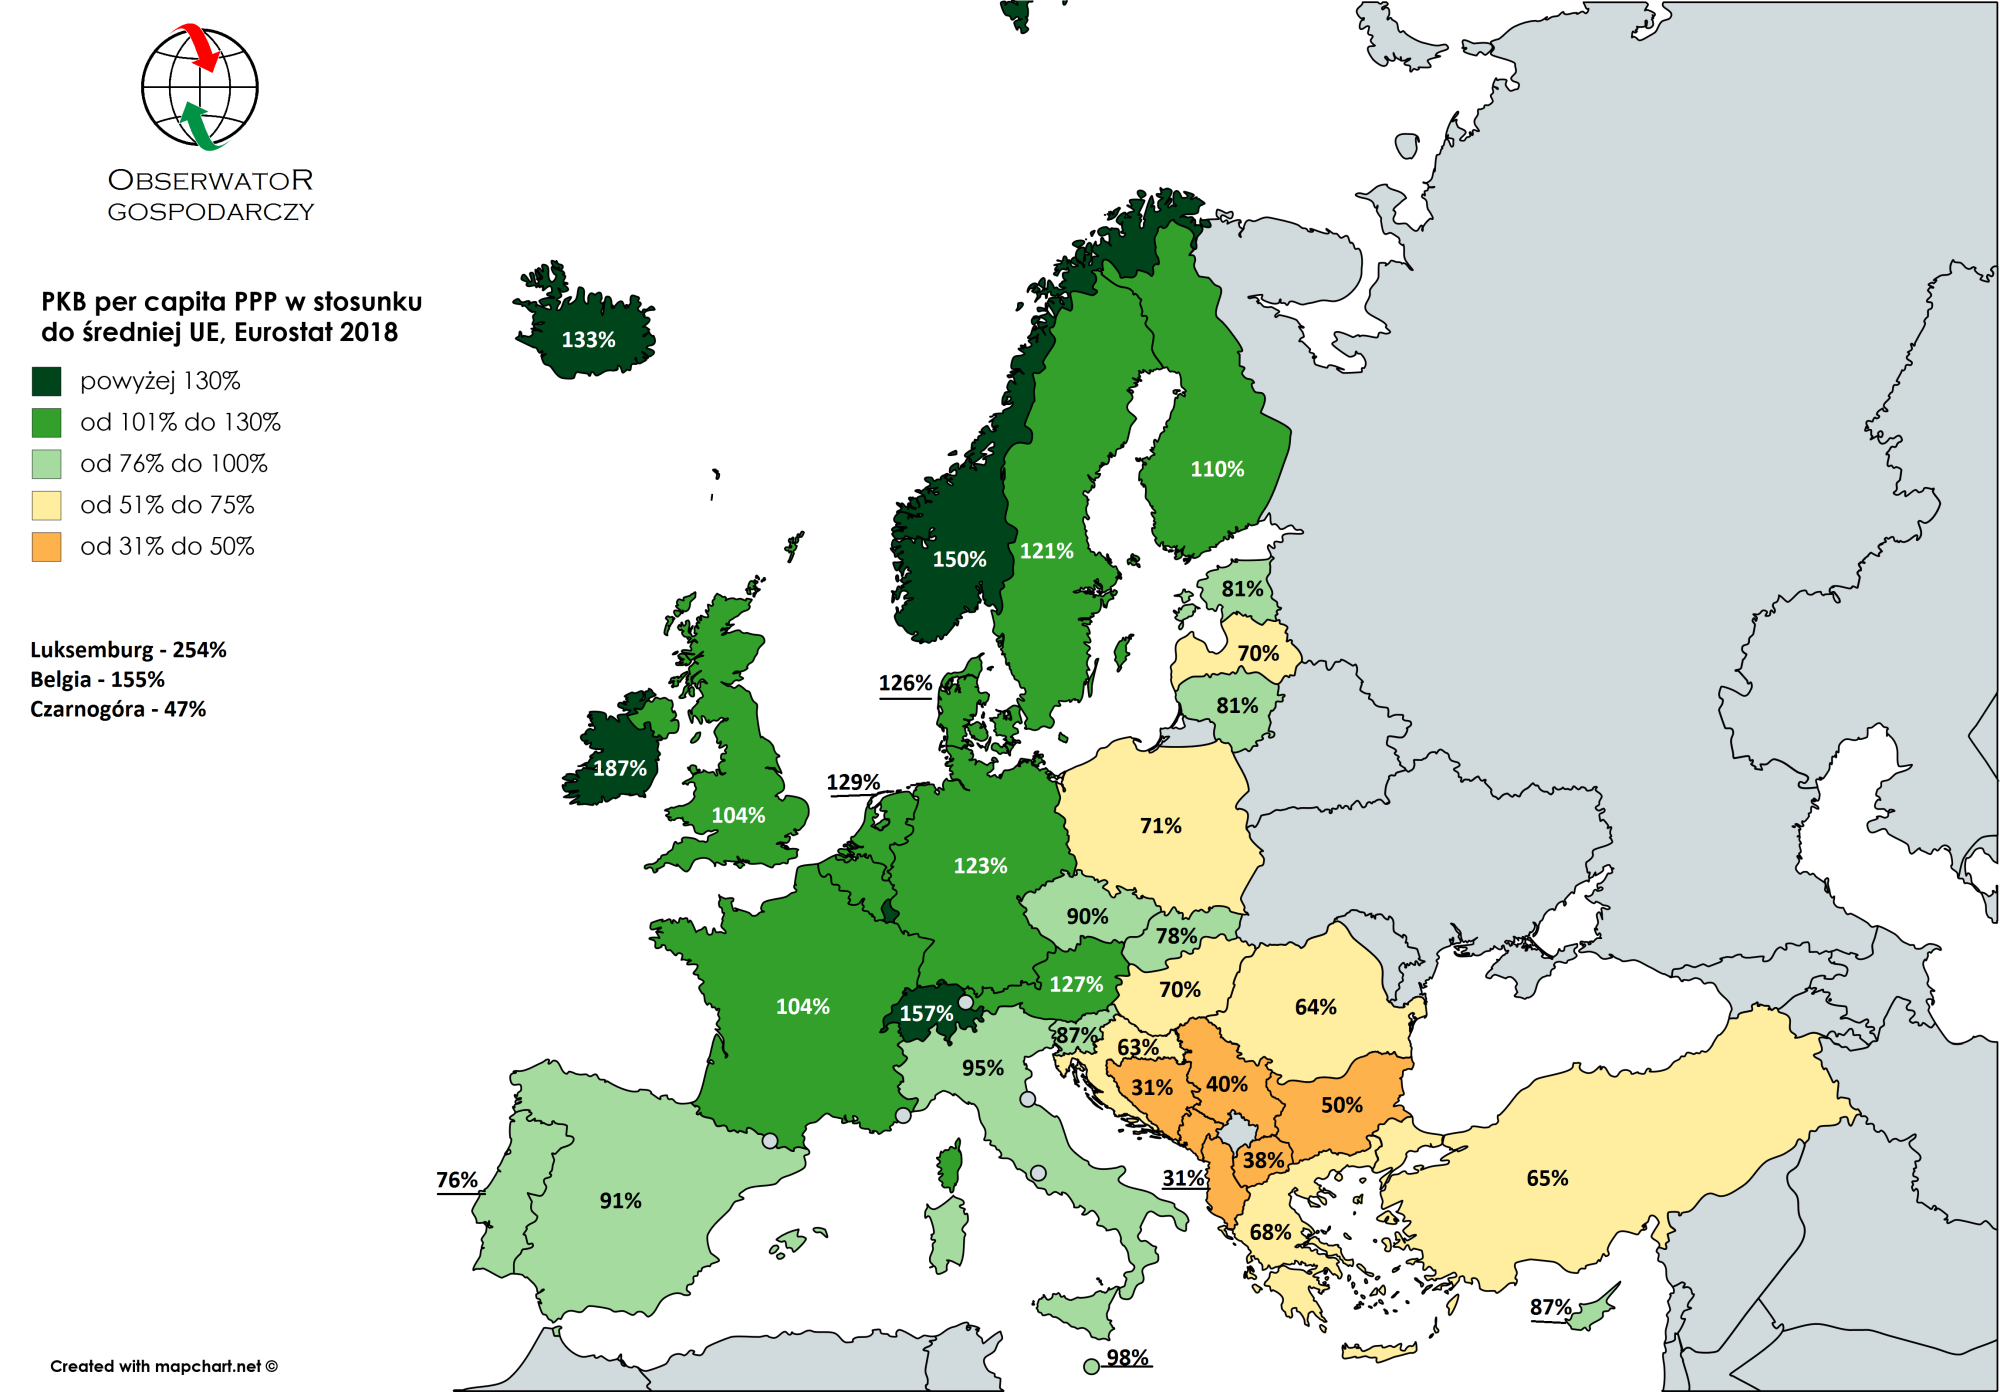 PKB per capita PPP w stosunku do średniej UE Eurostat 2018